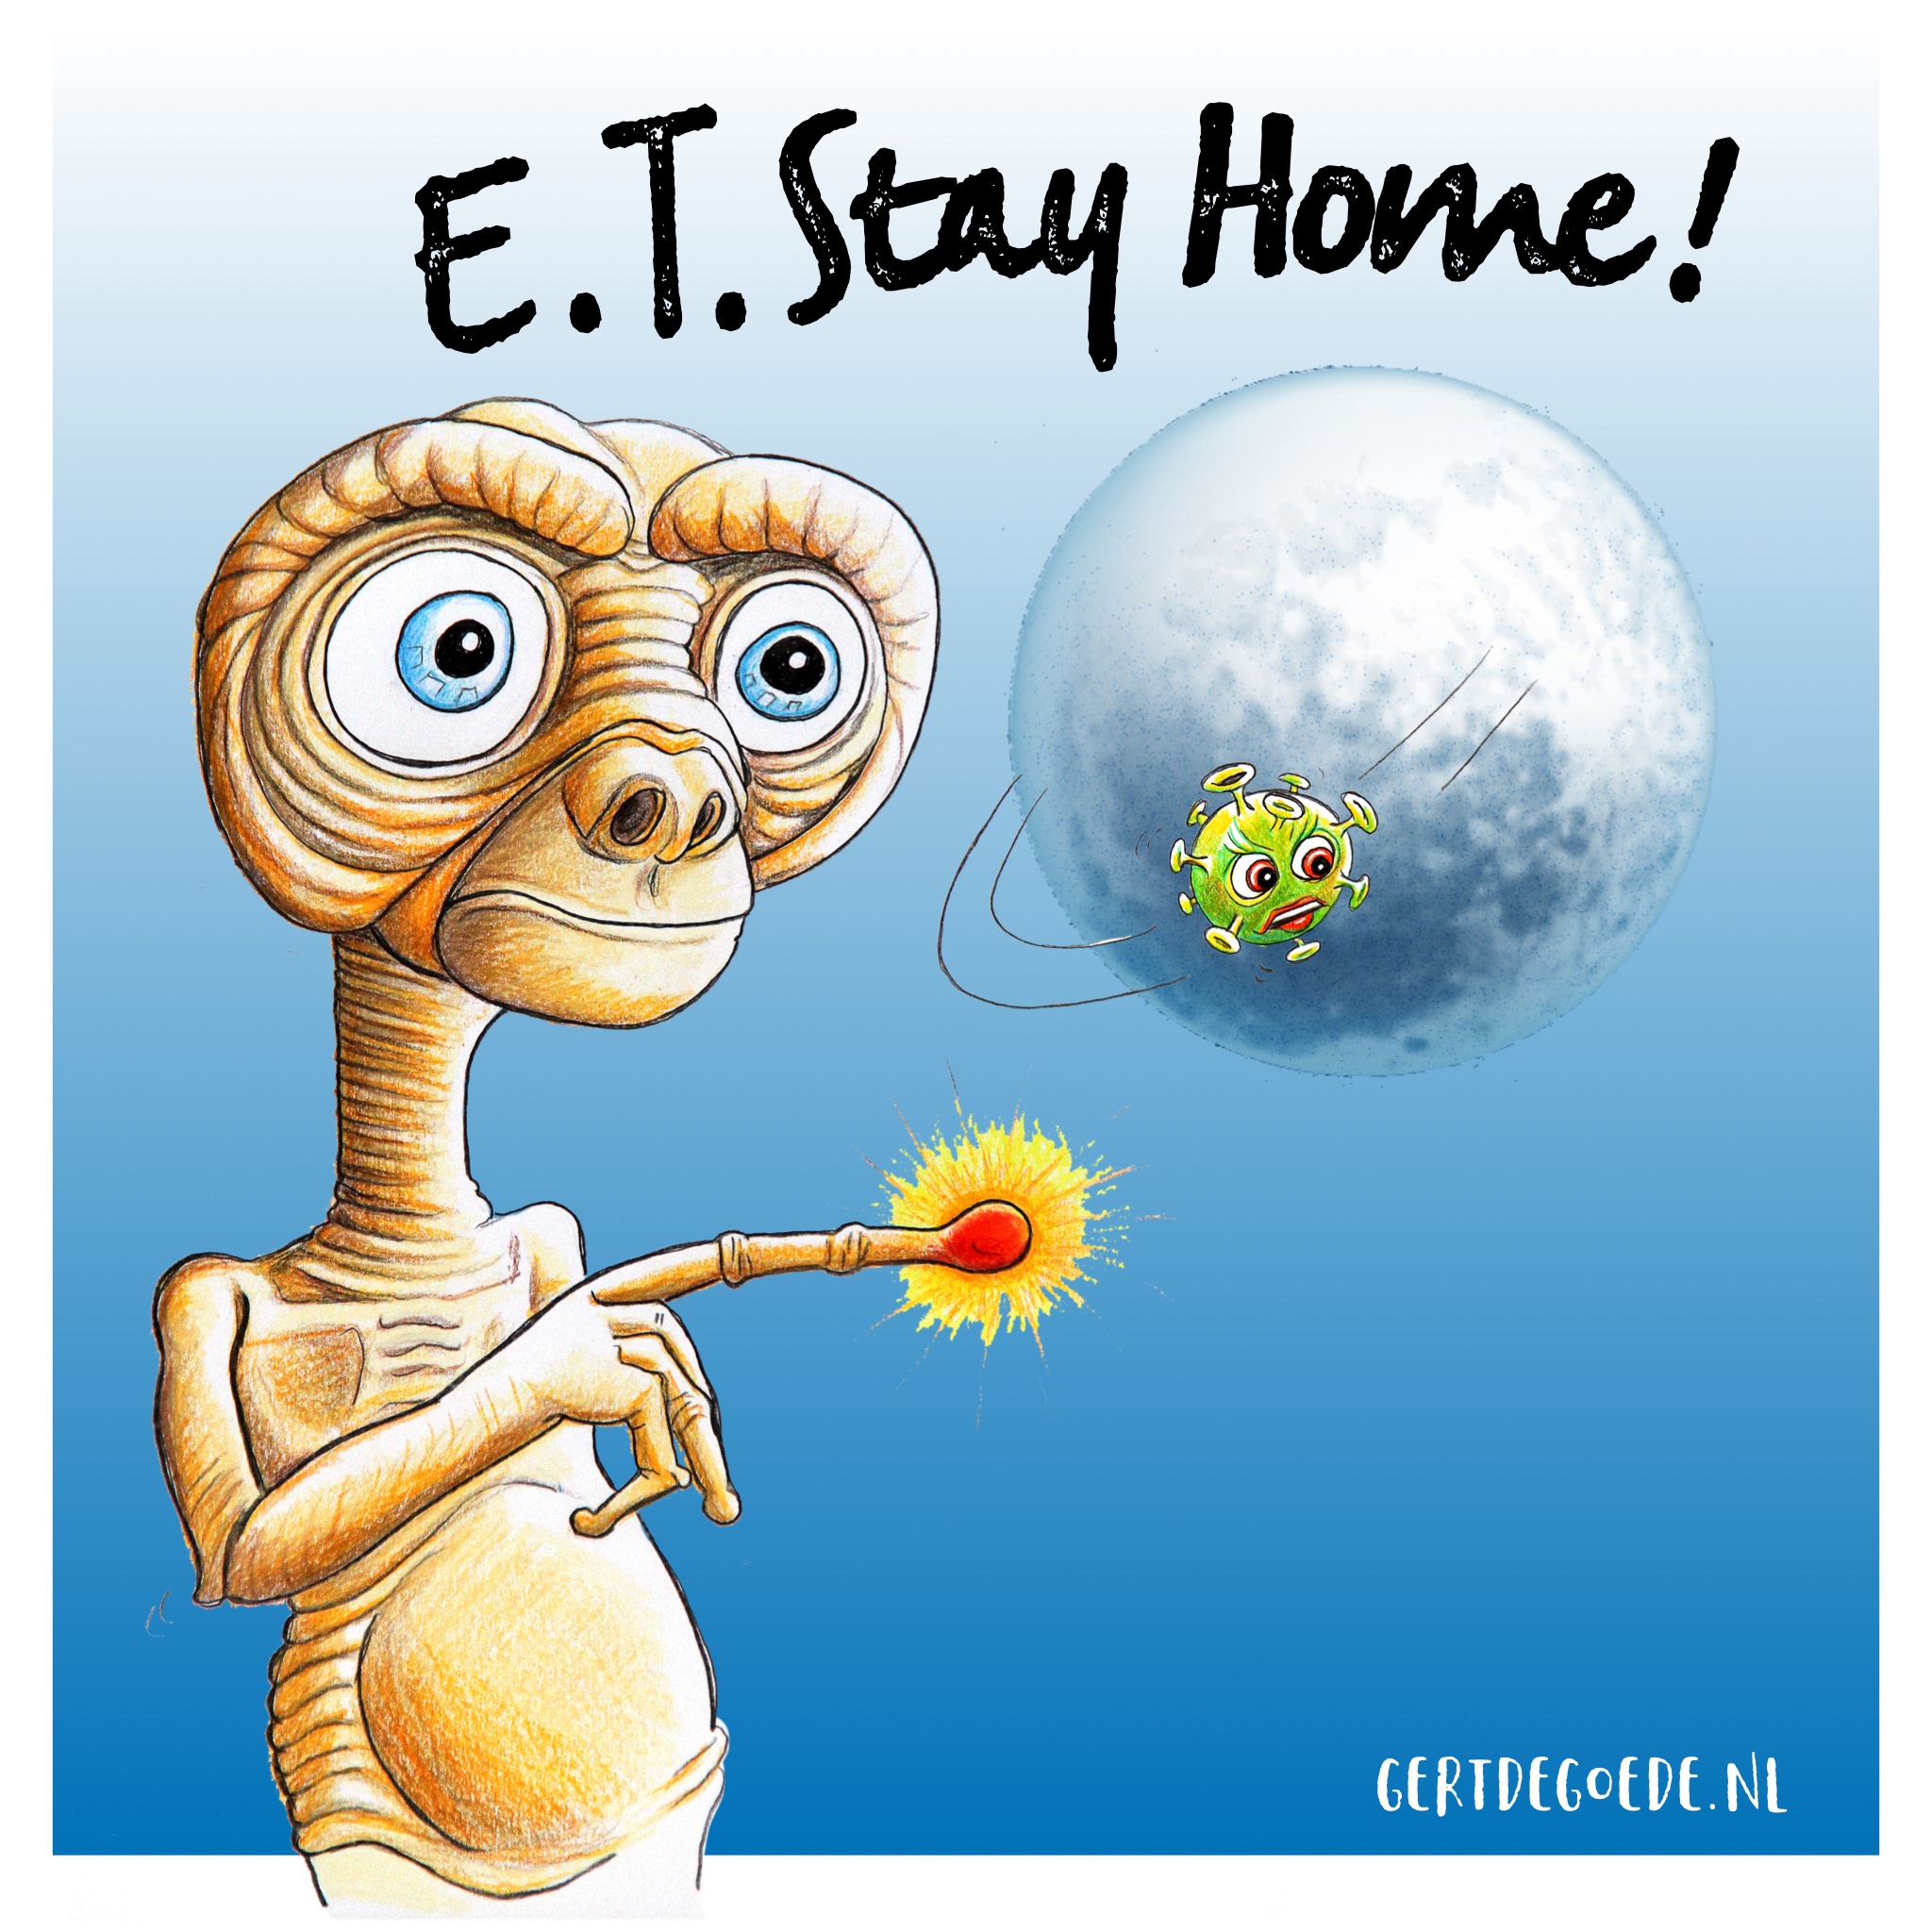 ET phone home stay cartoon gert de goede covid corona aliën ruimtewezen vrolijk grappig funny lol collection 